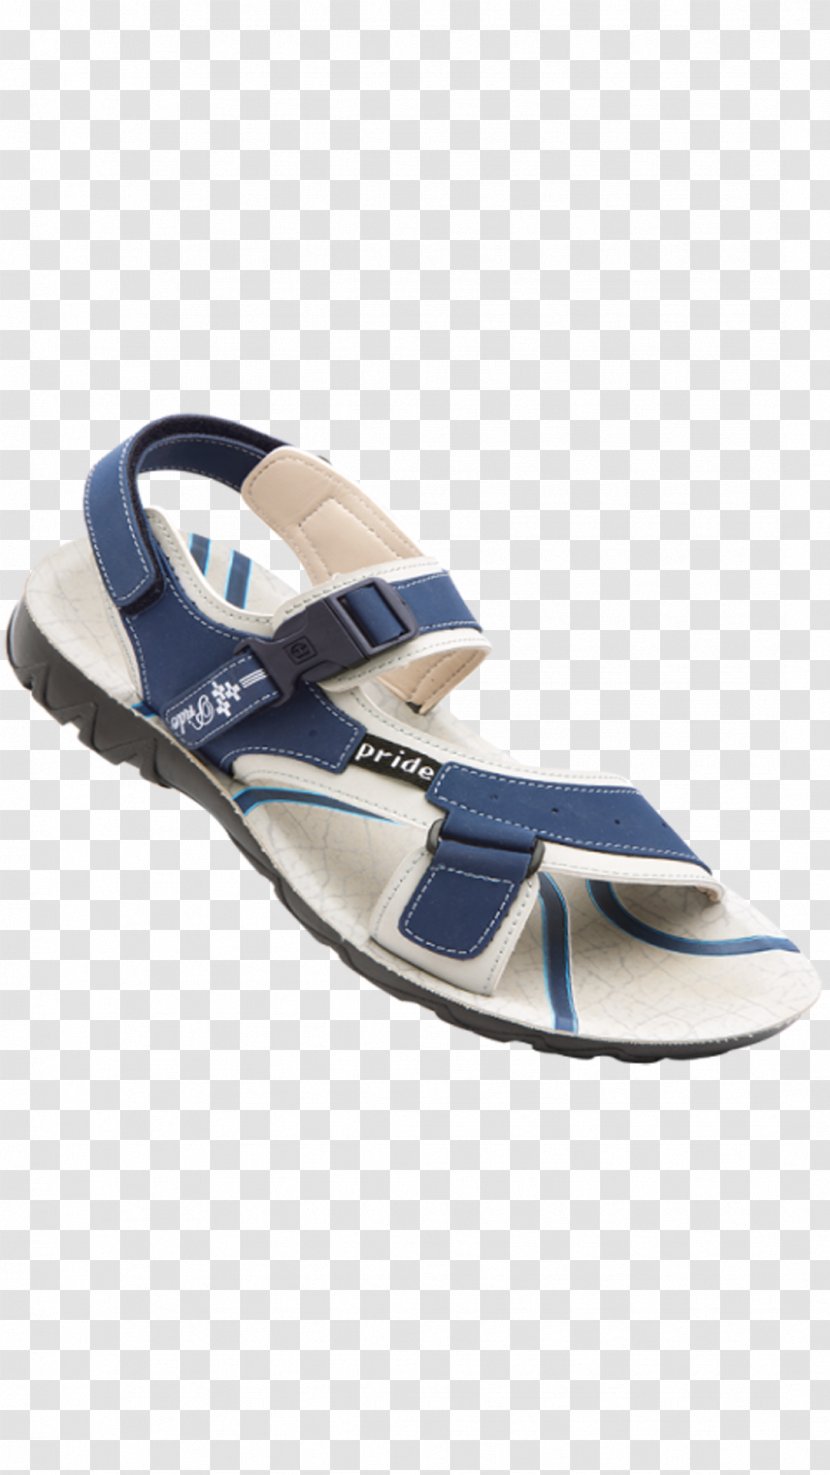 Flip-flops Slipper VKC Footwear Sandal Shoe Transparent PNG